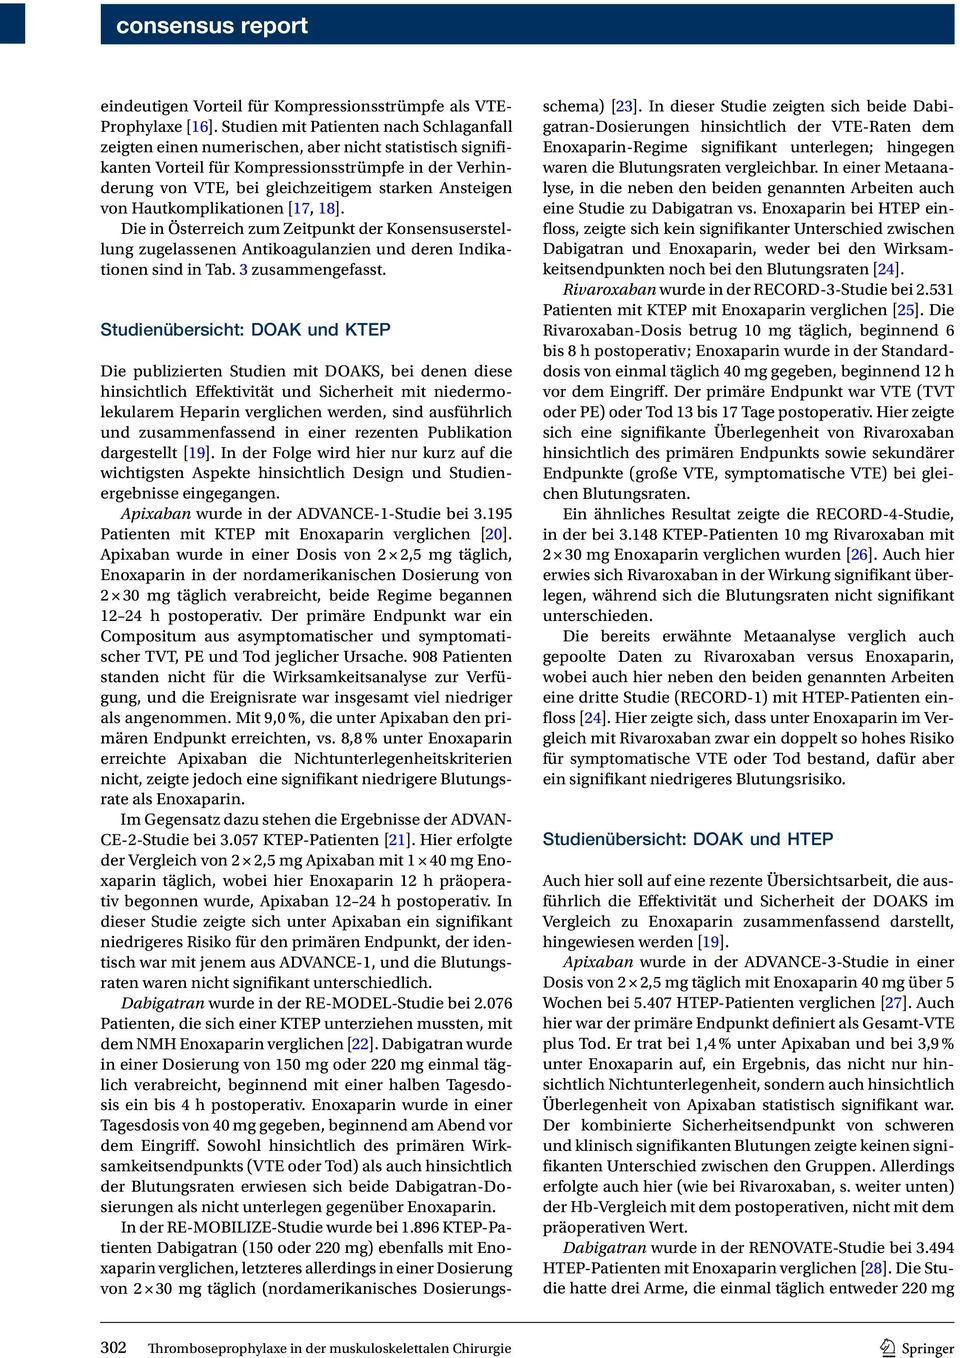 Ansteigen von Hautkomplikationen [17, 18]. Die in Österreich zum Zeitpunkt der Konsensuserstellung zugelassenen Antikoagulanzien und deren Indikationen sind in Tab. 3 zusammengefasst.